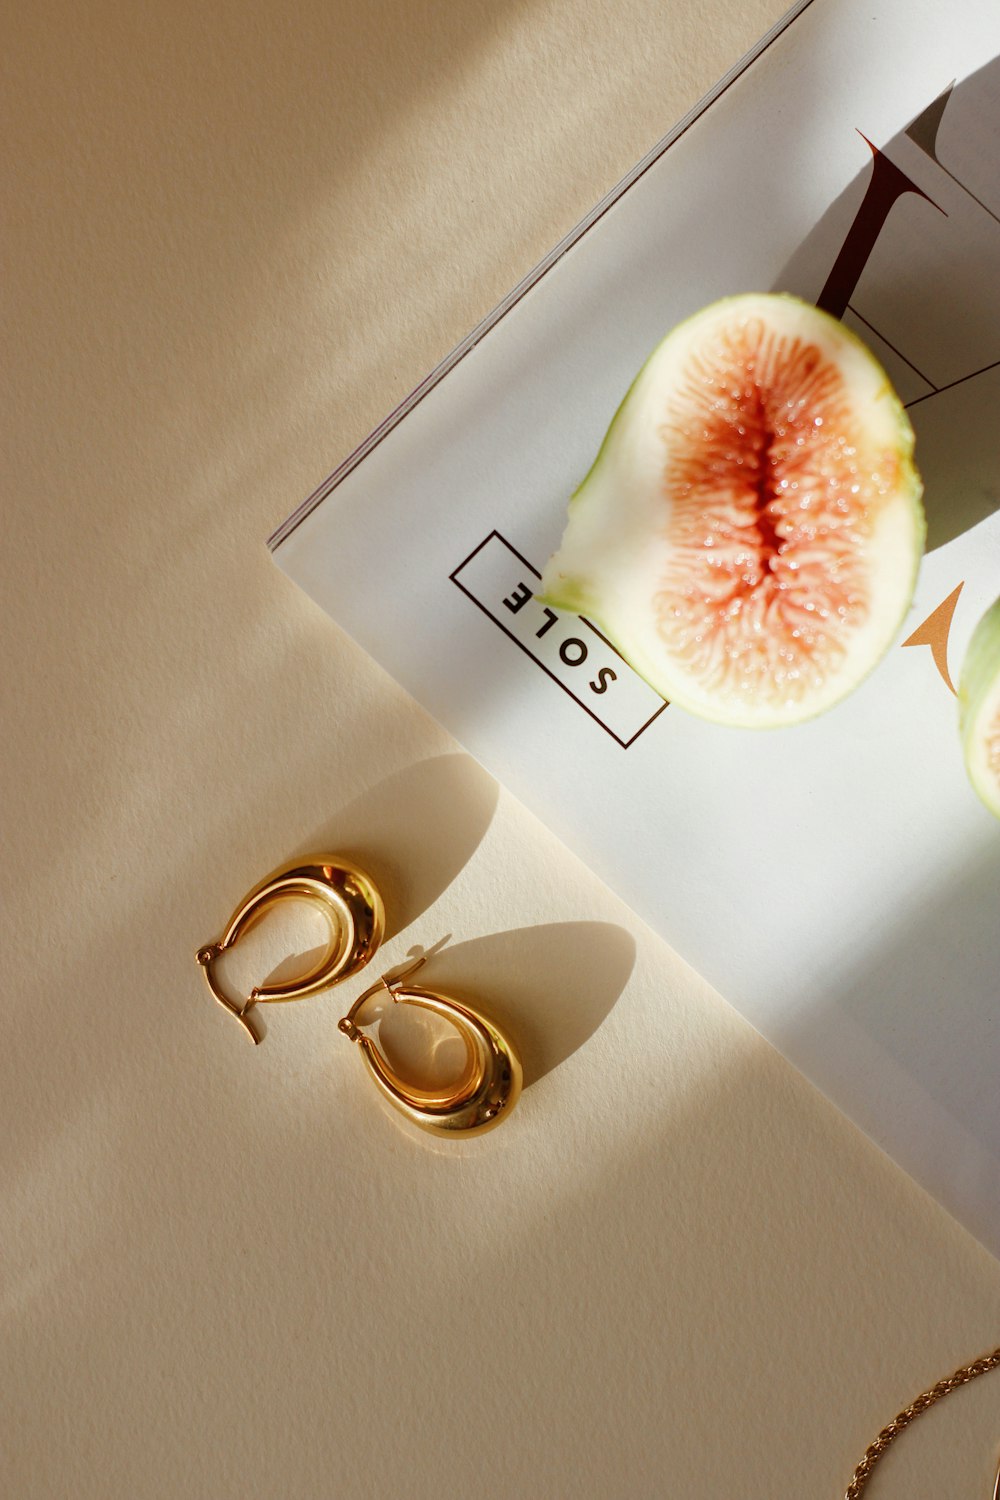 un fruit posé sur une table à côté d’une paire d’or